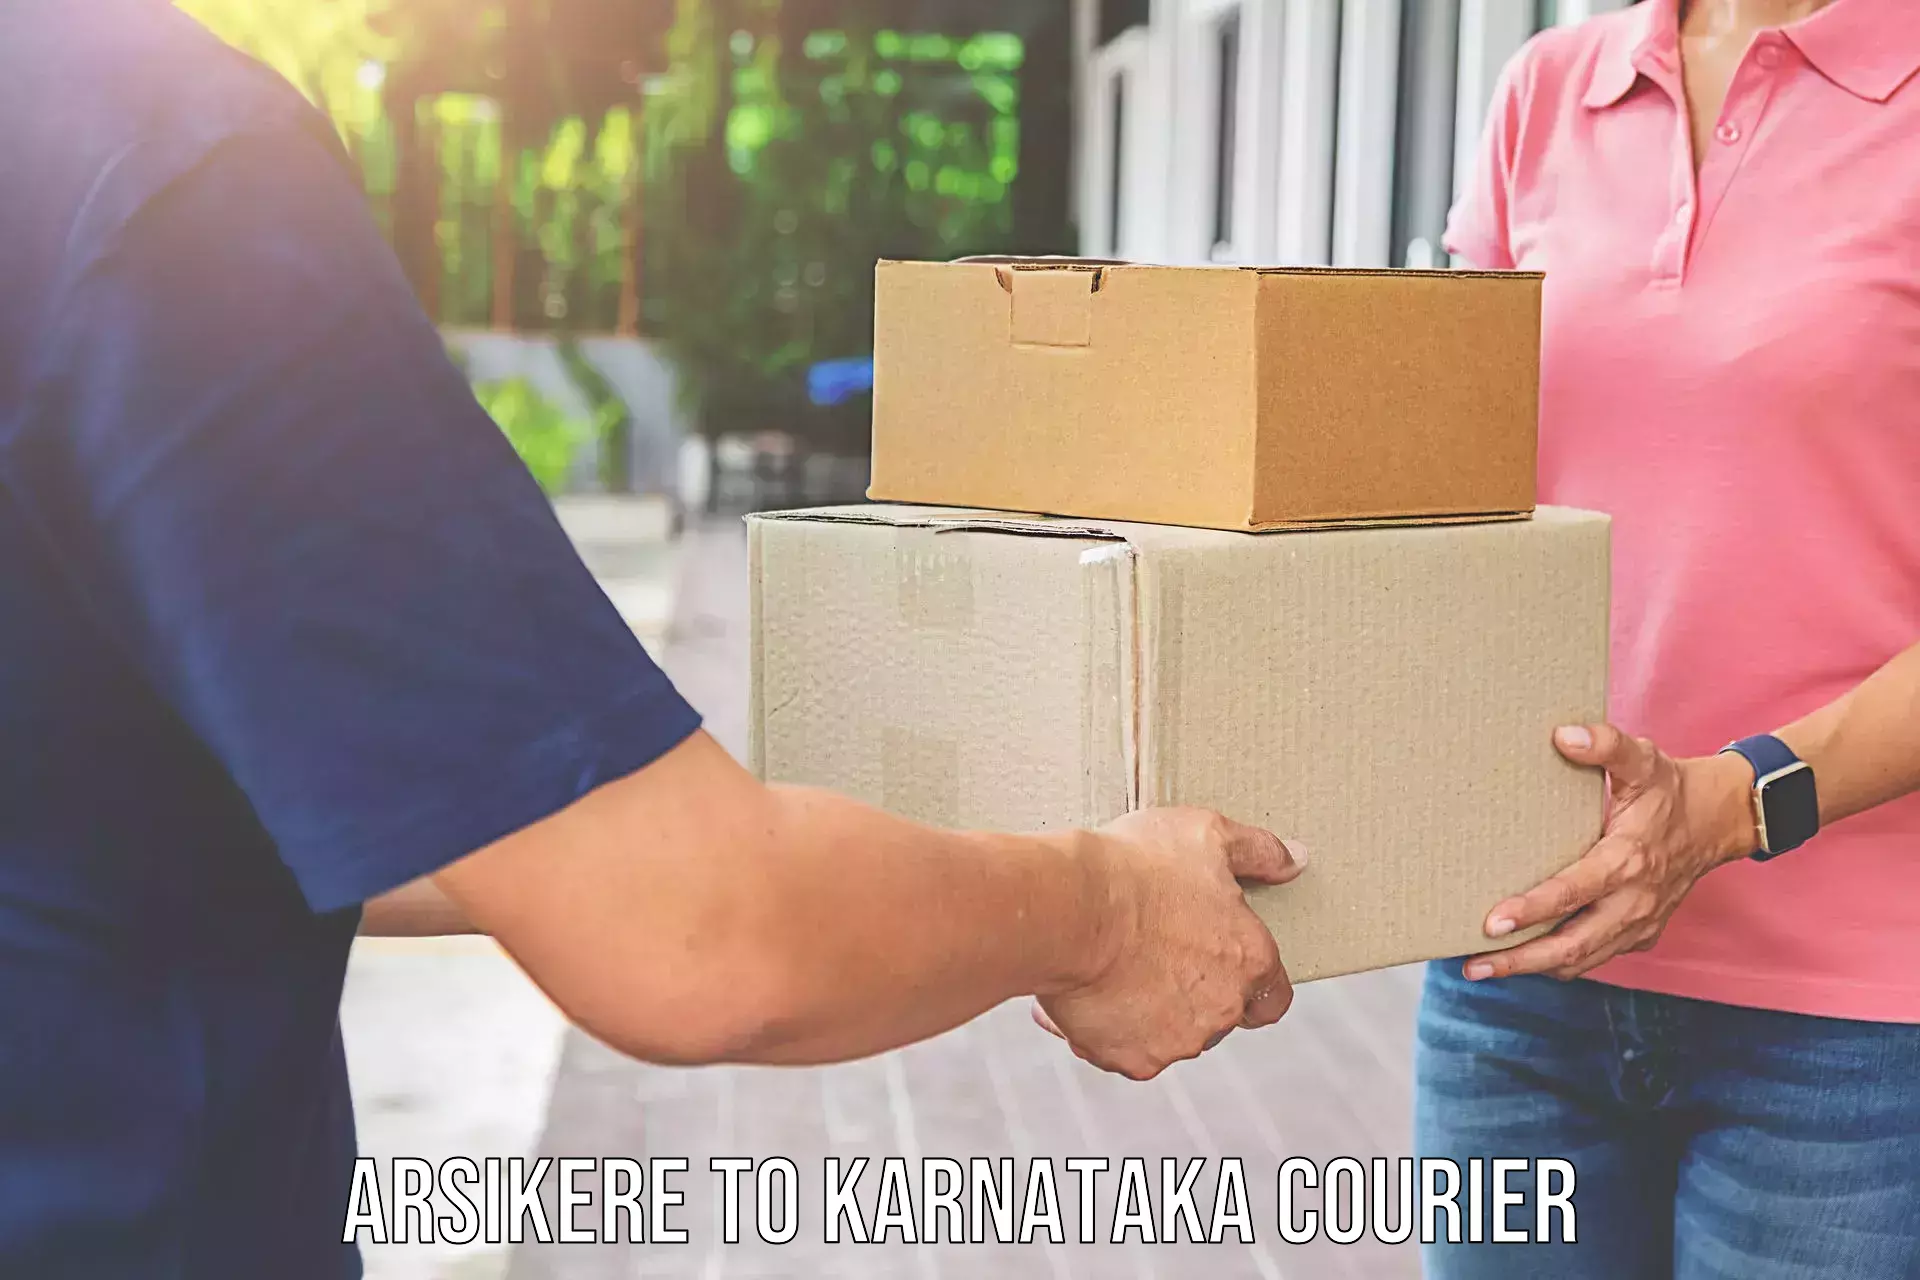 Furniture transport experts Arsikere to Karnataka